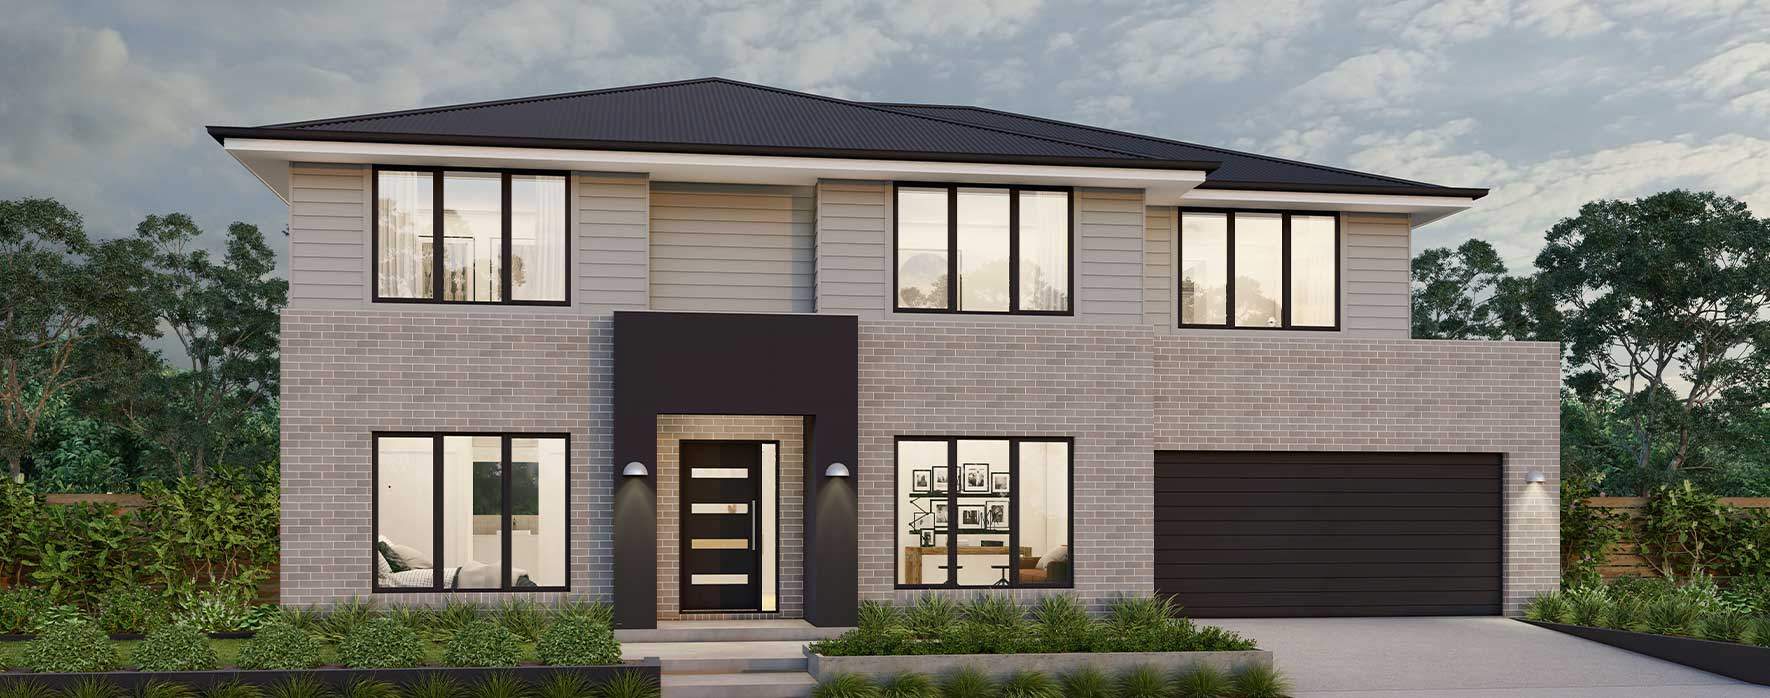 hamilton-double-story-house-design-modern-facade